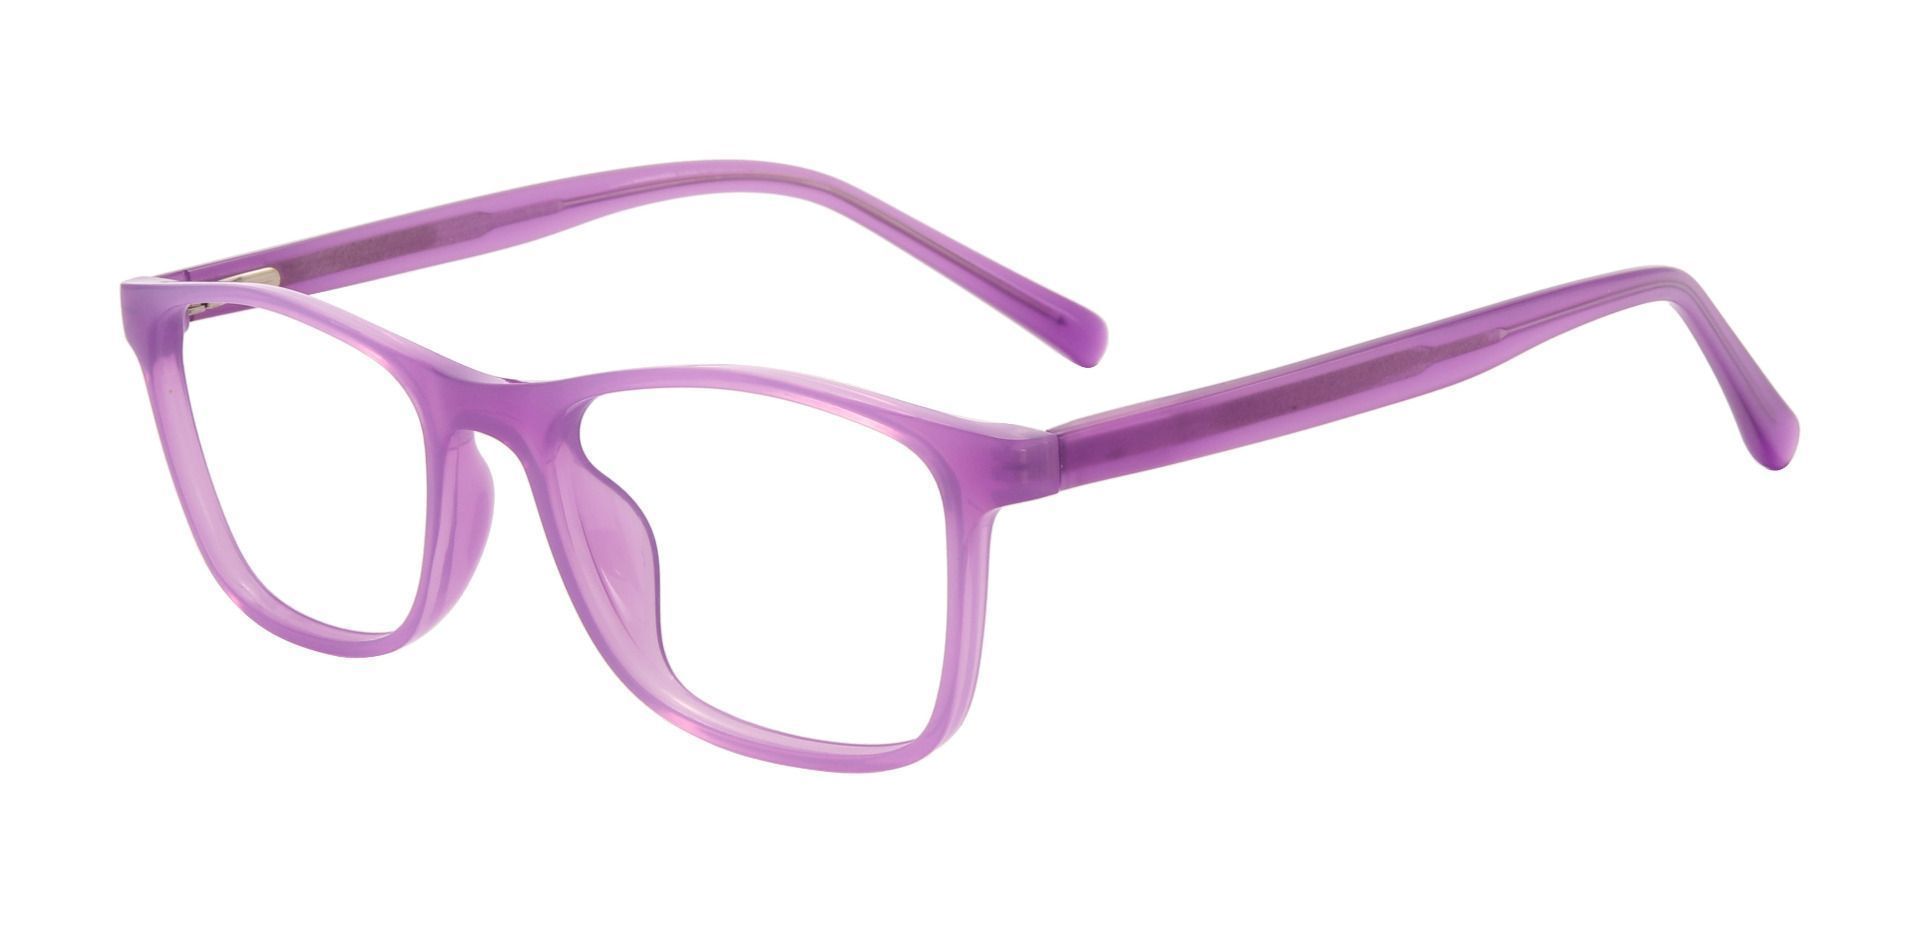 Anton Rectangle Prescription Glasses - Purple